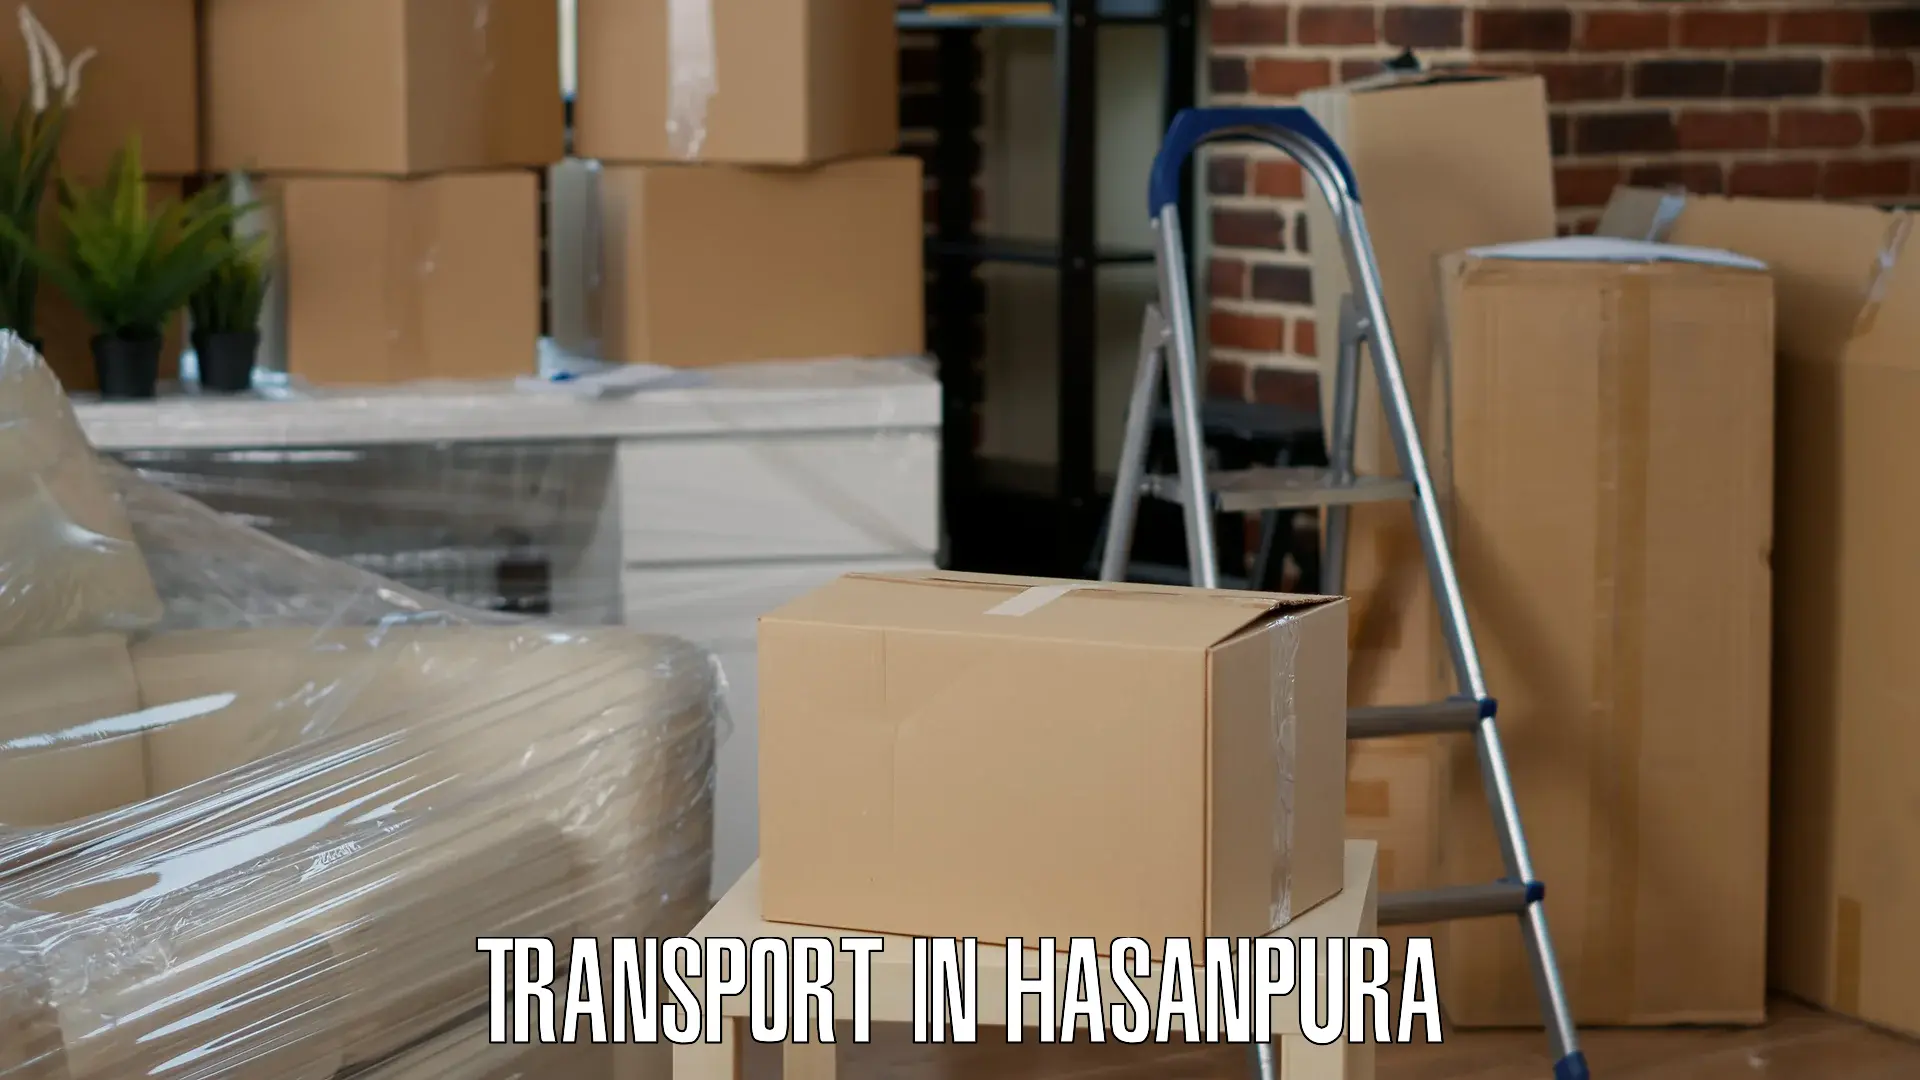 Online transport service in Hasanpura